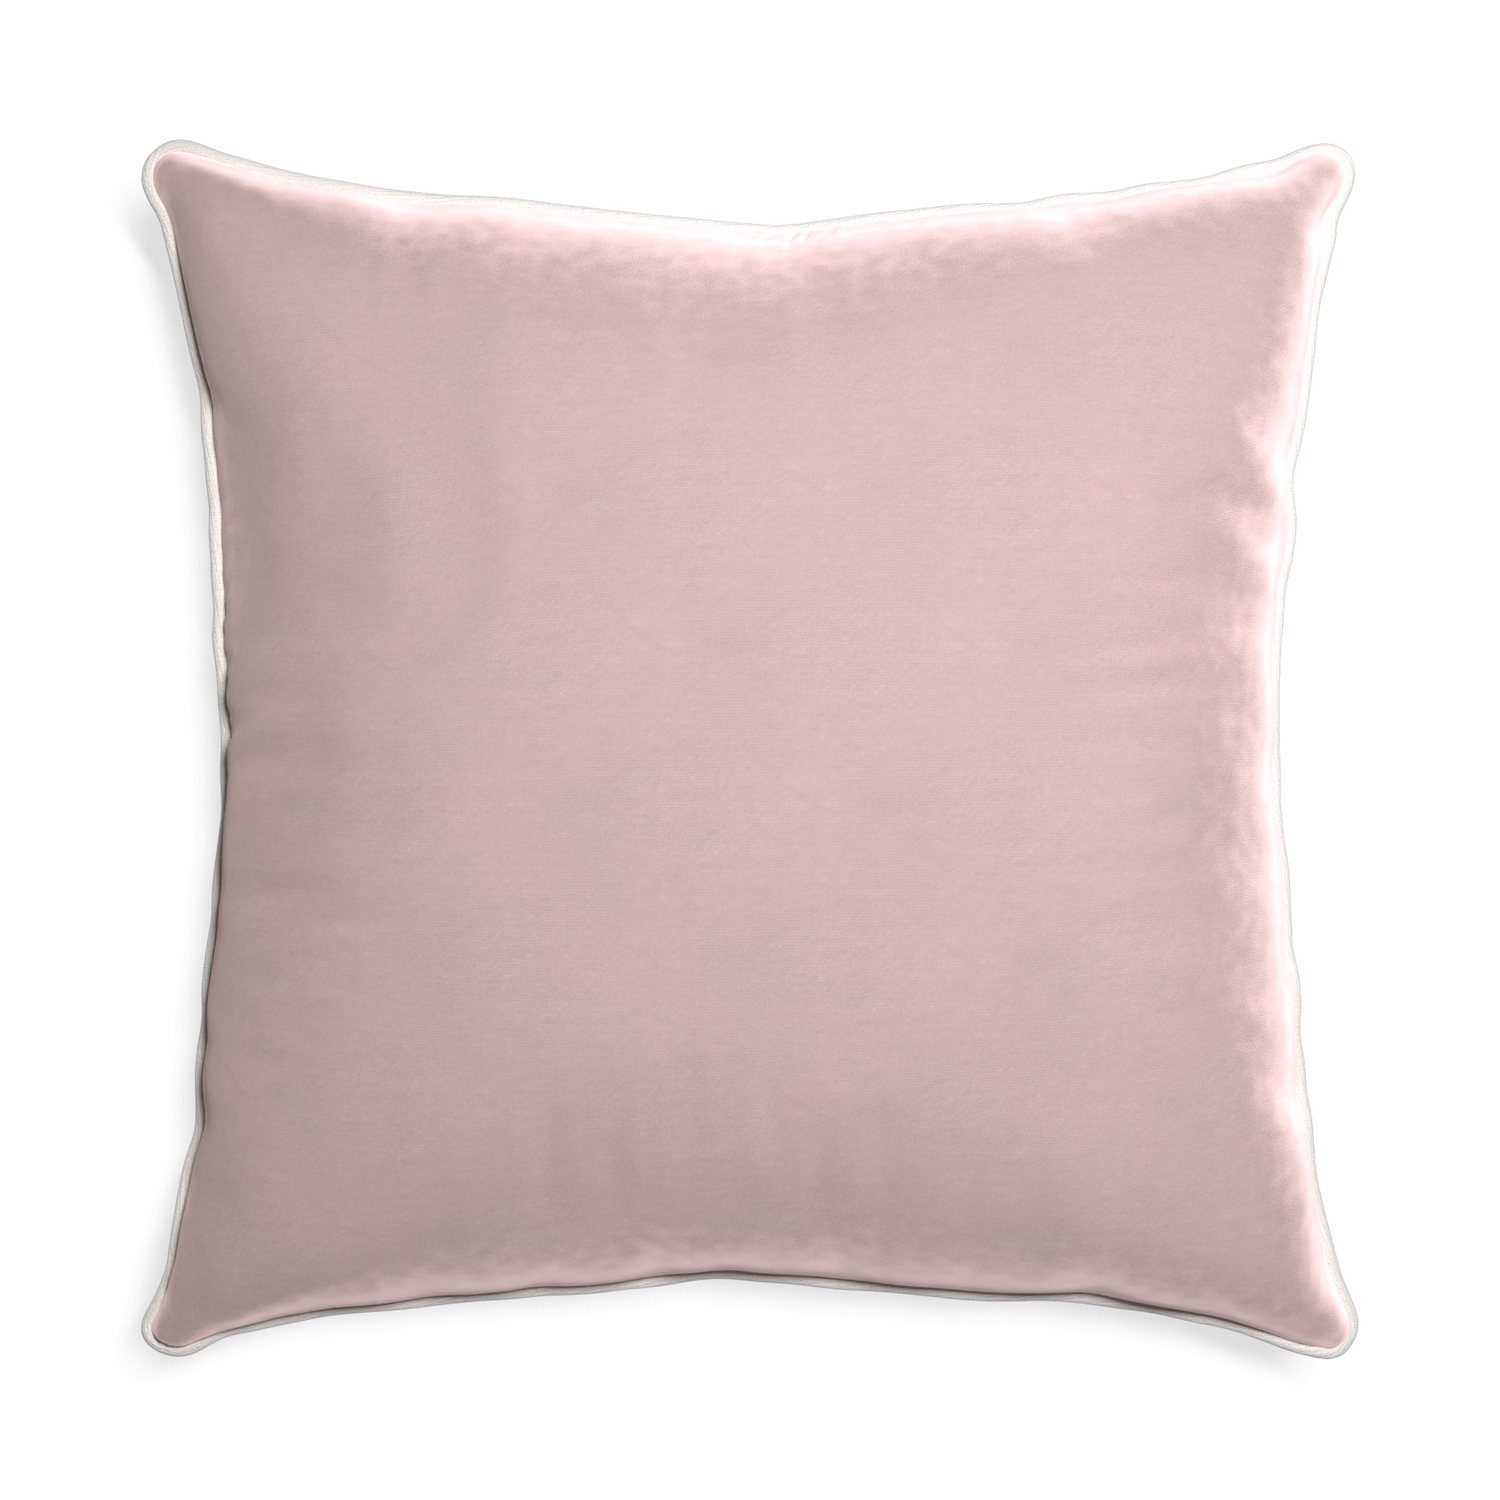 Euro-sham rose velvet custom pillow with snow piping on white background